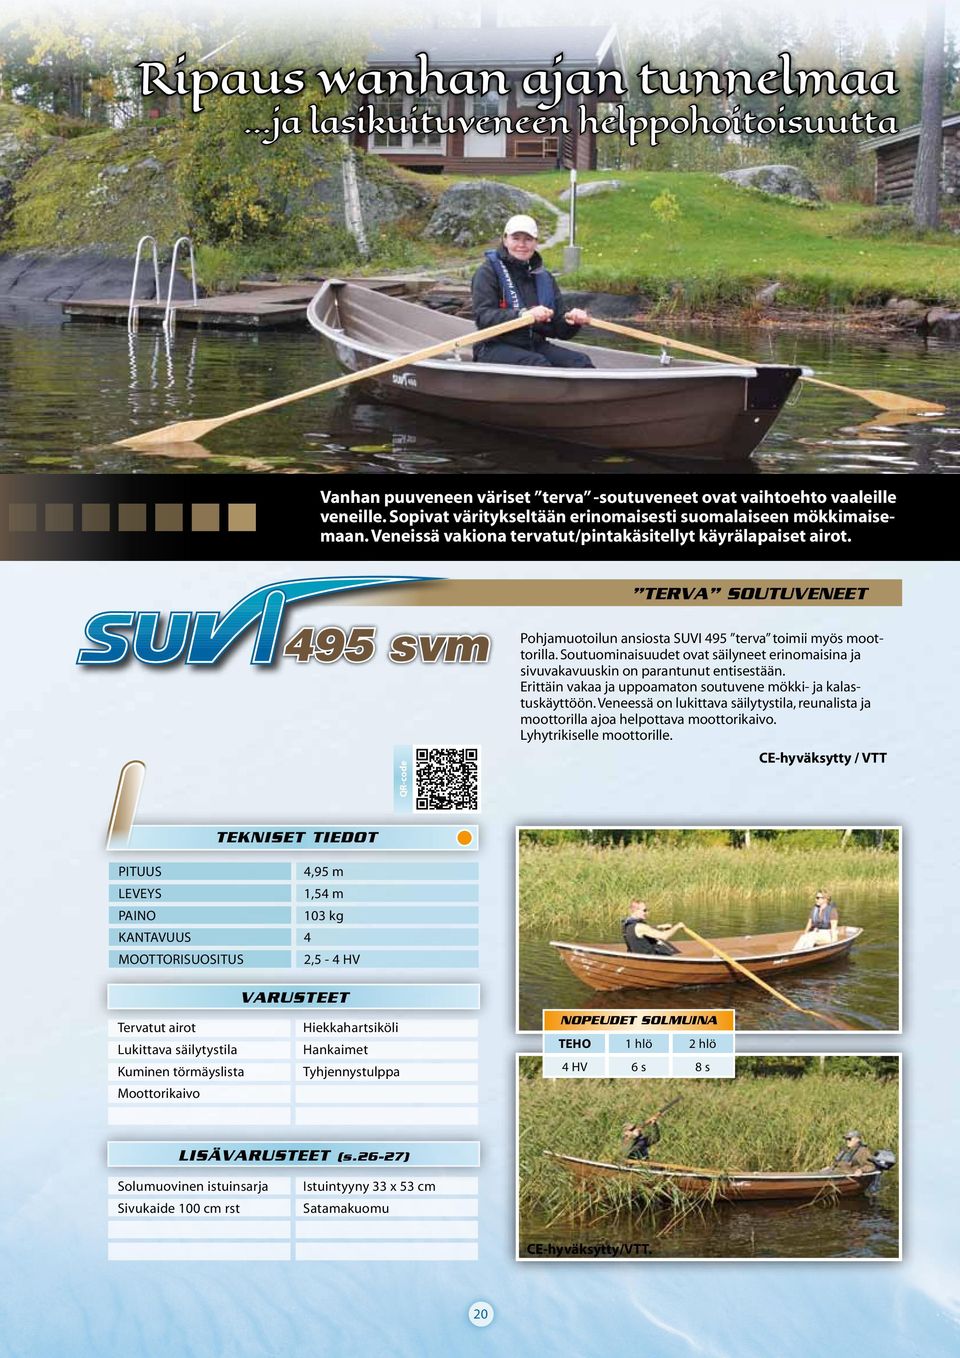 495 svm TERVA SOUTUVENEET Pohjamuotoilun ansiosta SUVI 495 terva toimii myös moottorilla. Soutuominaisuudet ovat säilyneet erinomaisina ja sivuvakavuuskin on parantunut entisestään.